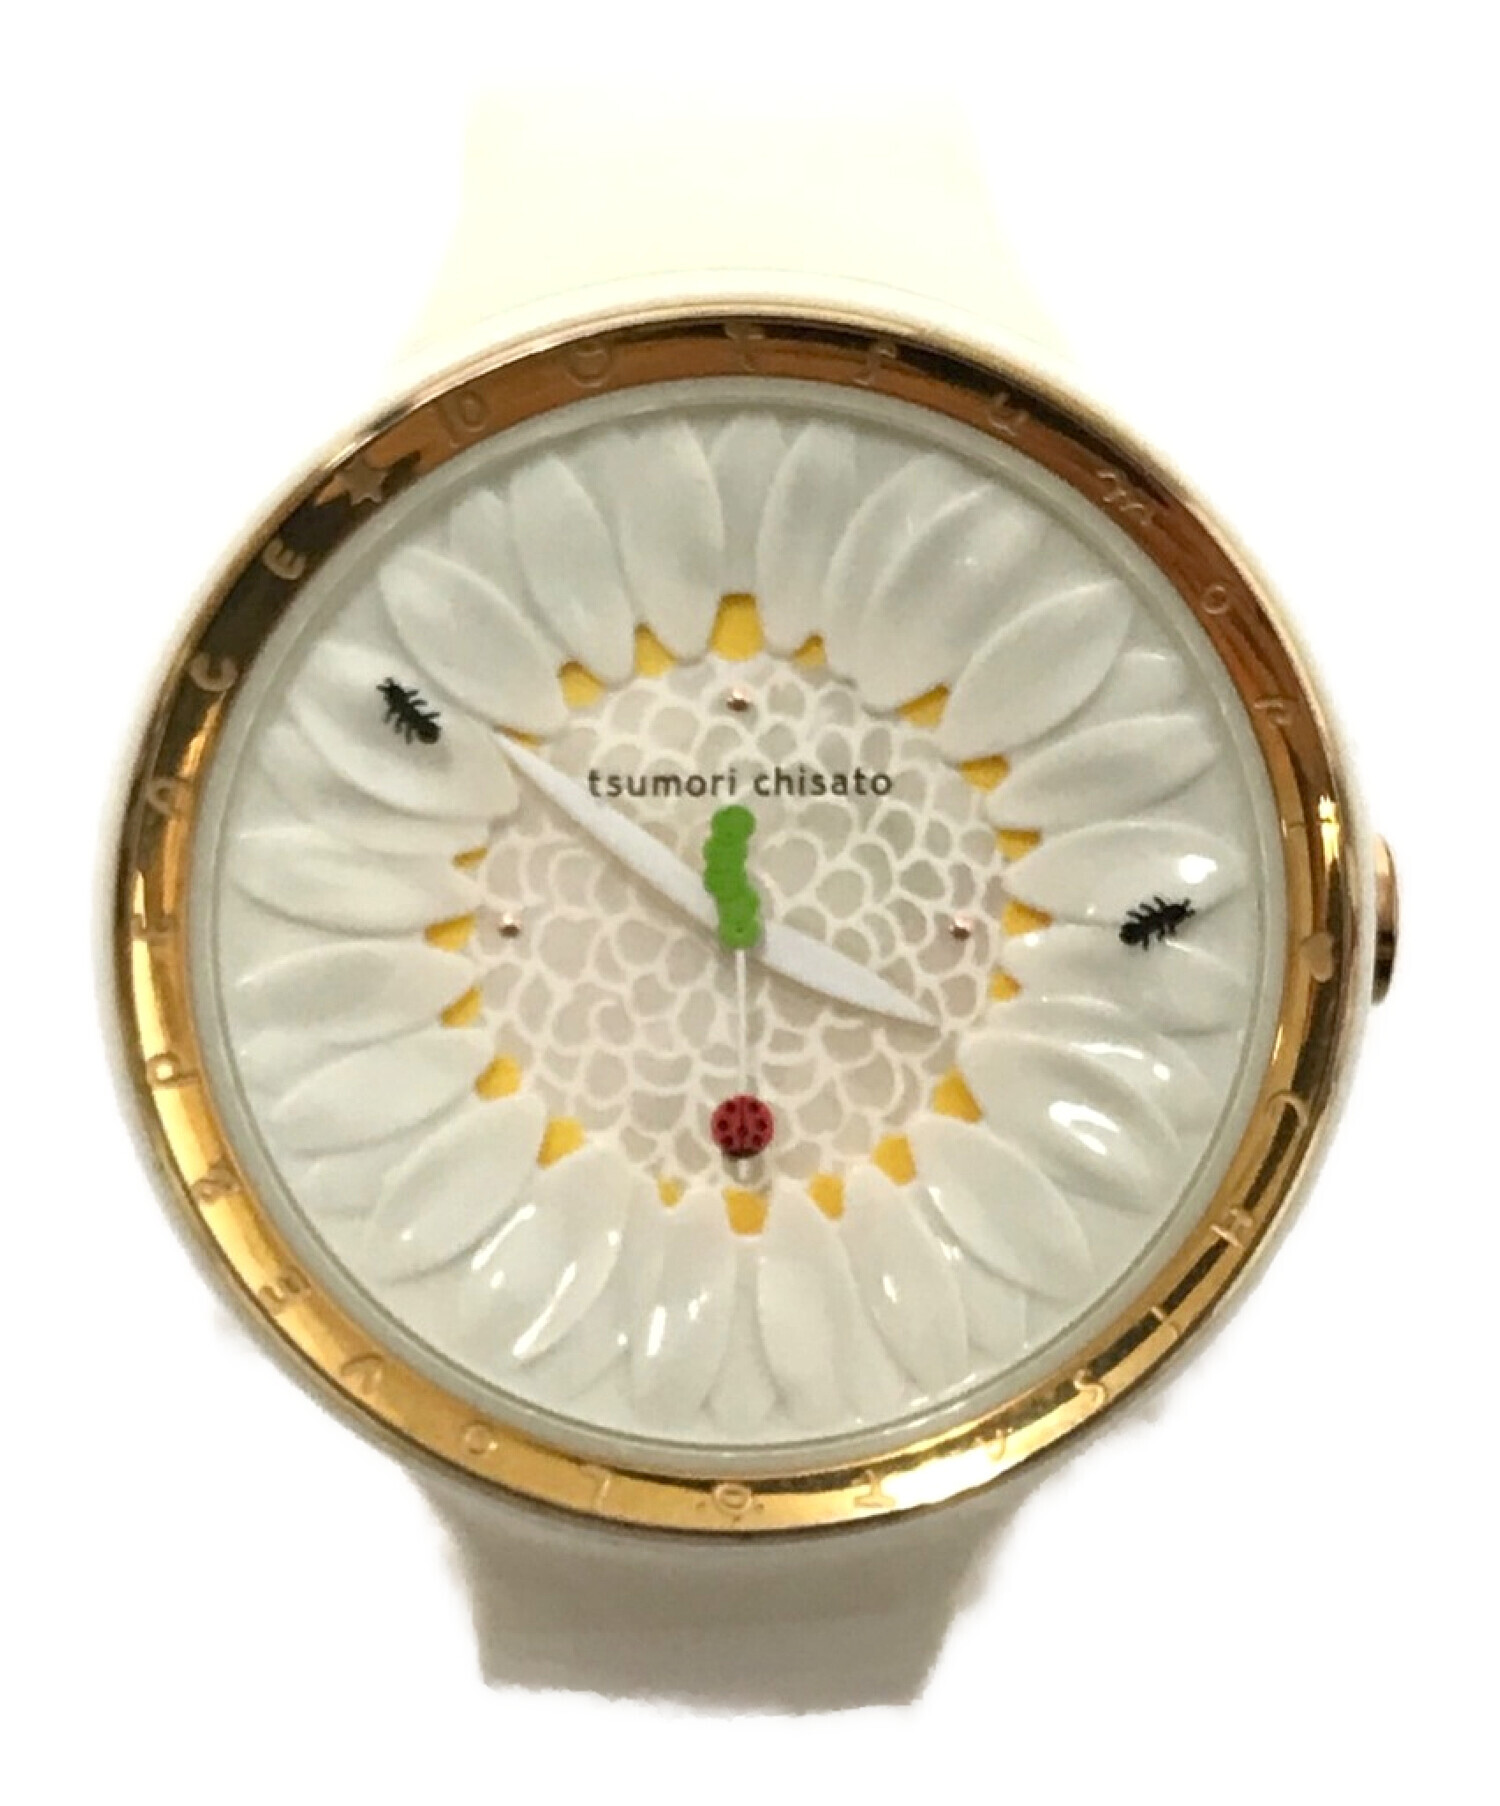 tsumori chisato (ツモリチサト) 腕時計 サイズ:下記参照